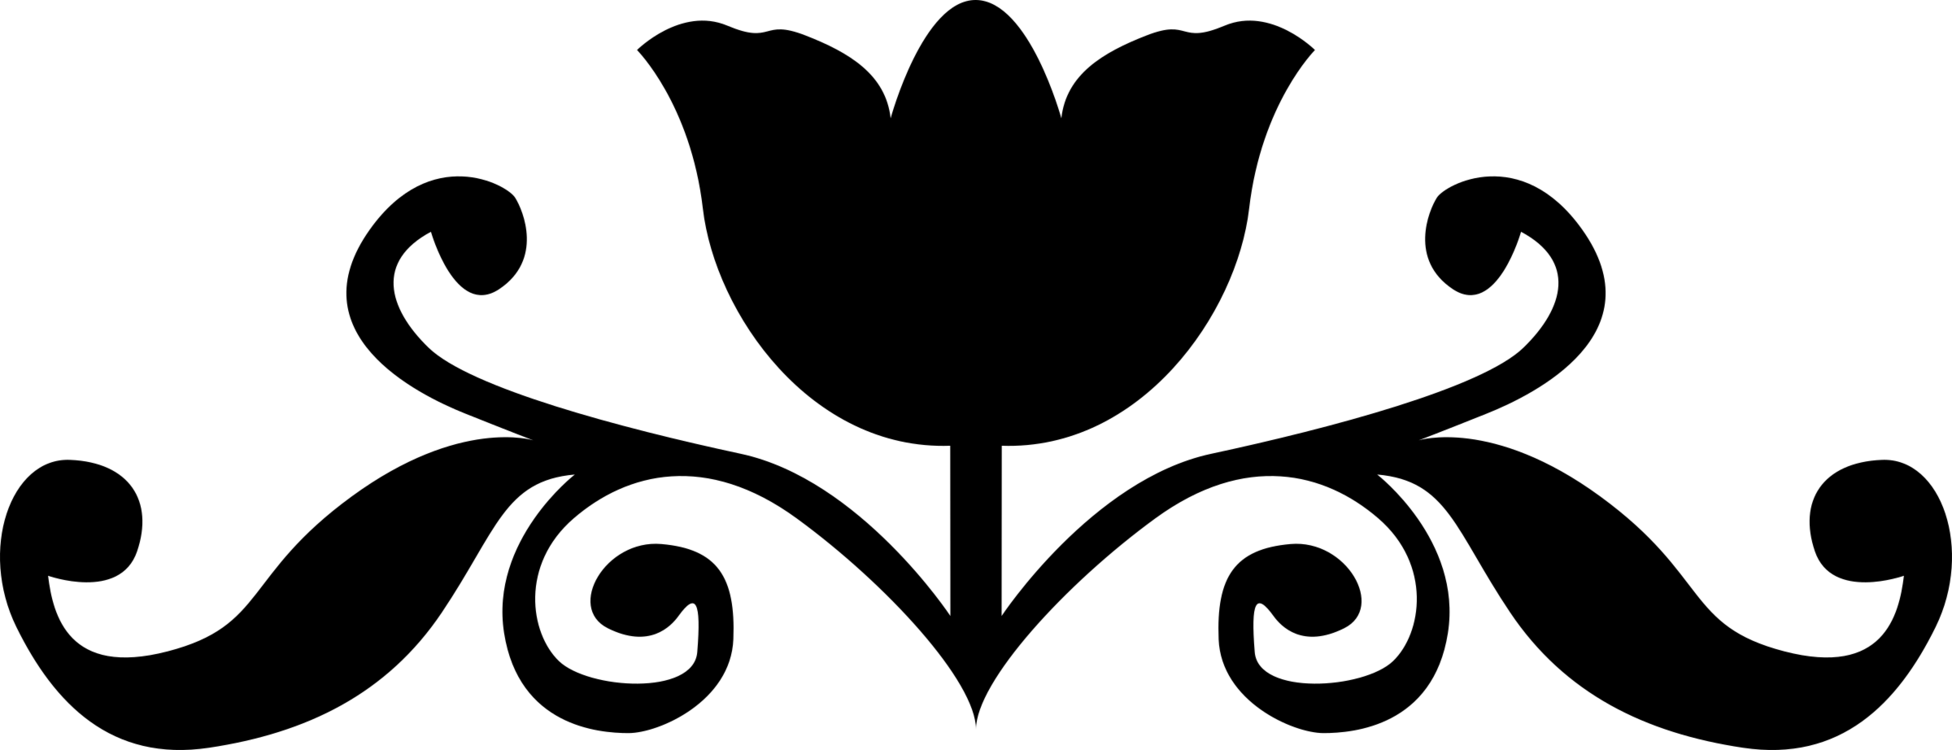 Black Flower Logo - Silhouette Rose Black and white Flower Logo free commercial clipart